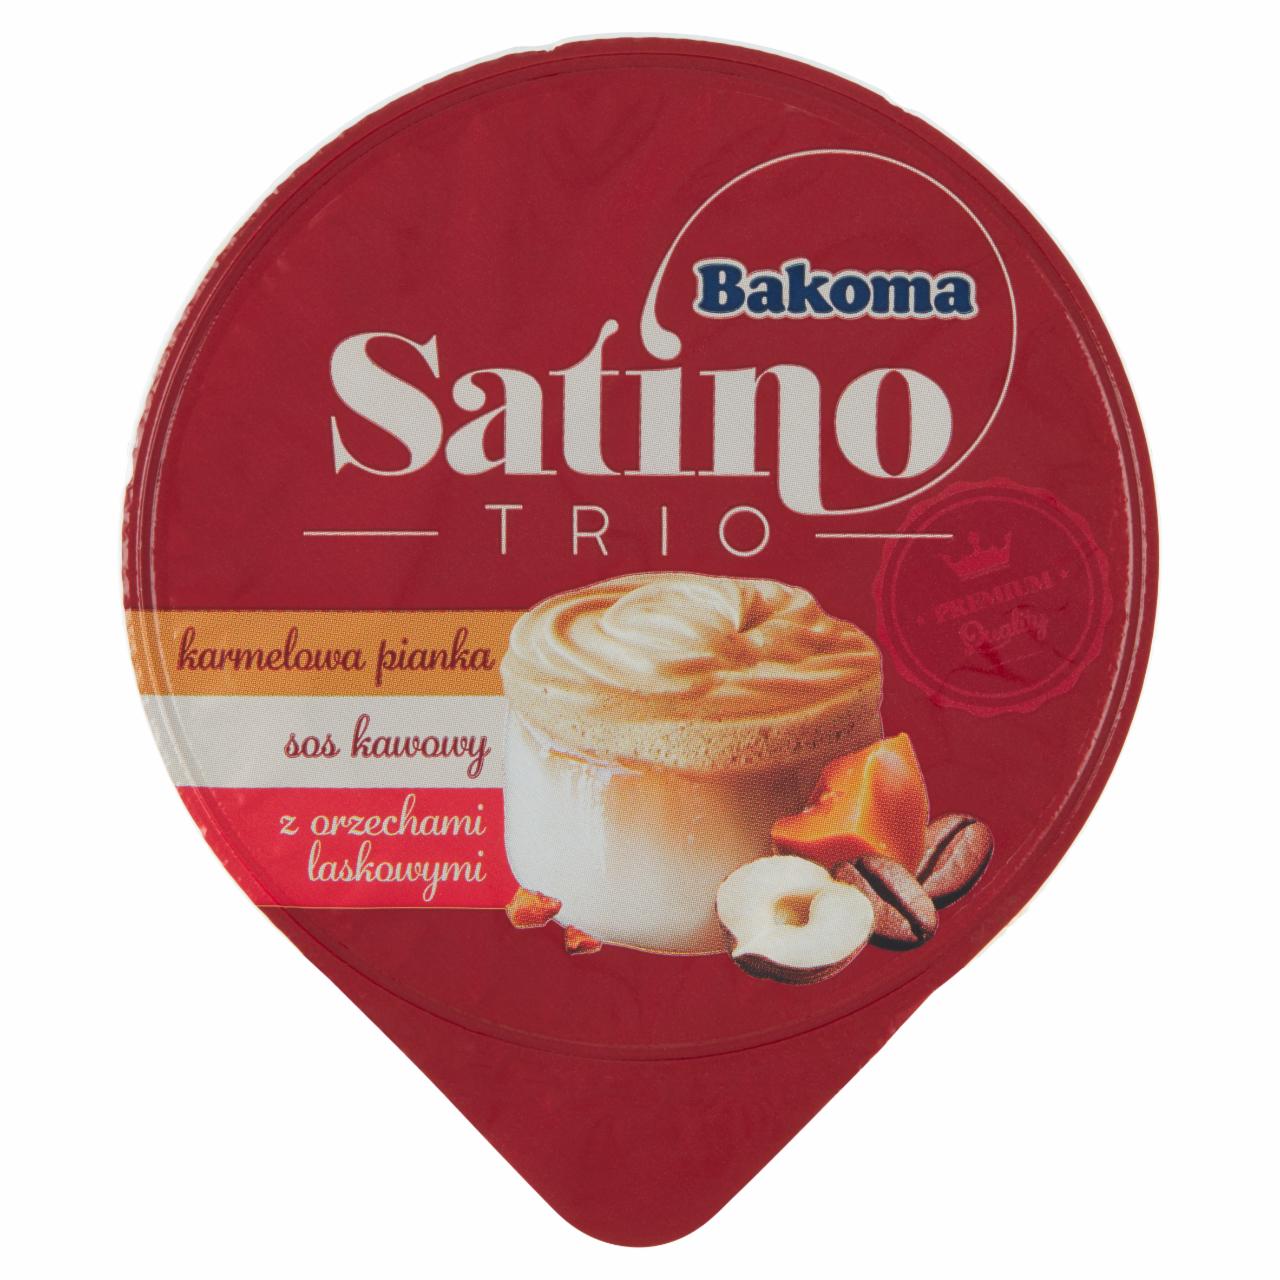 Zdjęcia - Bakoma Satino Trio Deser karmelowa pianka sos kawowy z orzechami laskowymi 100 g